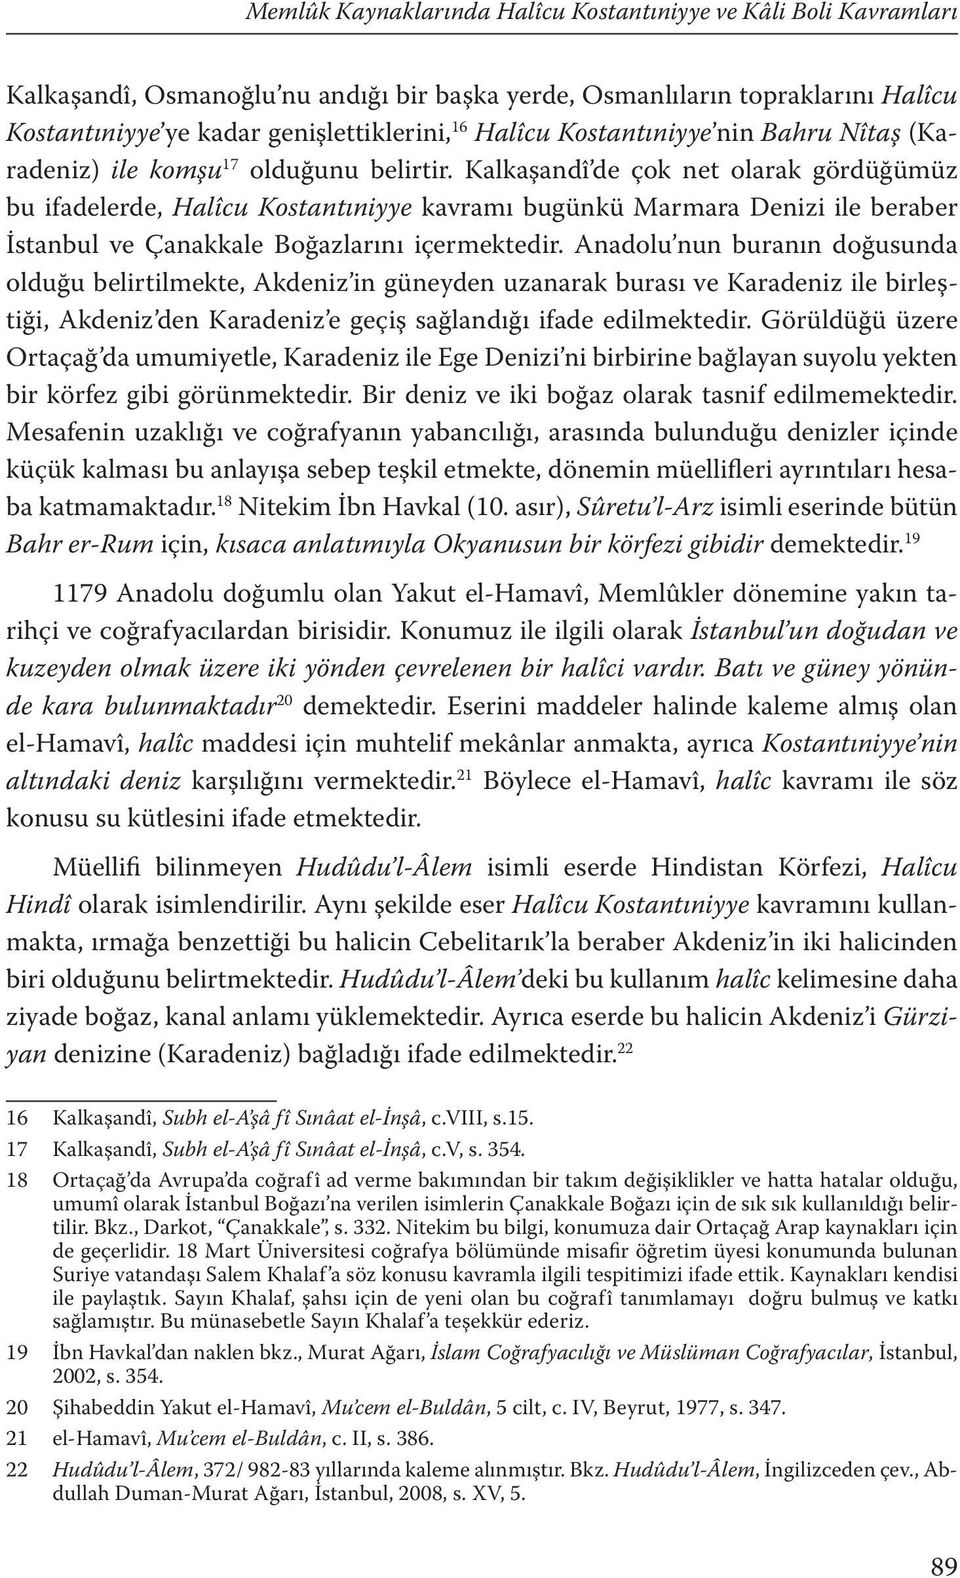 Kalkaşandî de çok net olarak gördüğümüz bu ifadelerde, Halîcu Kostantıniyye kavramı bugünkü Marmara Denizi ile beraber İstanbul ve Çanakkale Boğazlarını içermektedir.